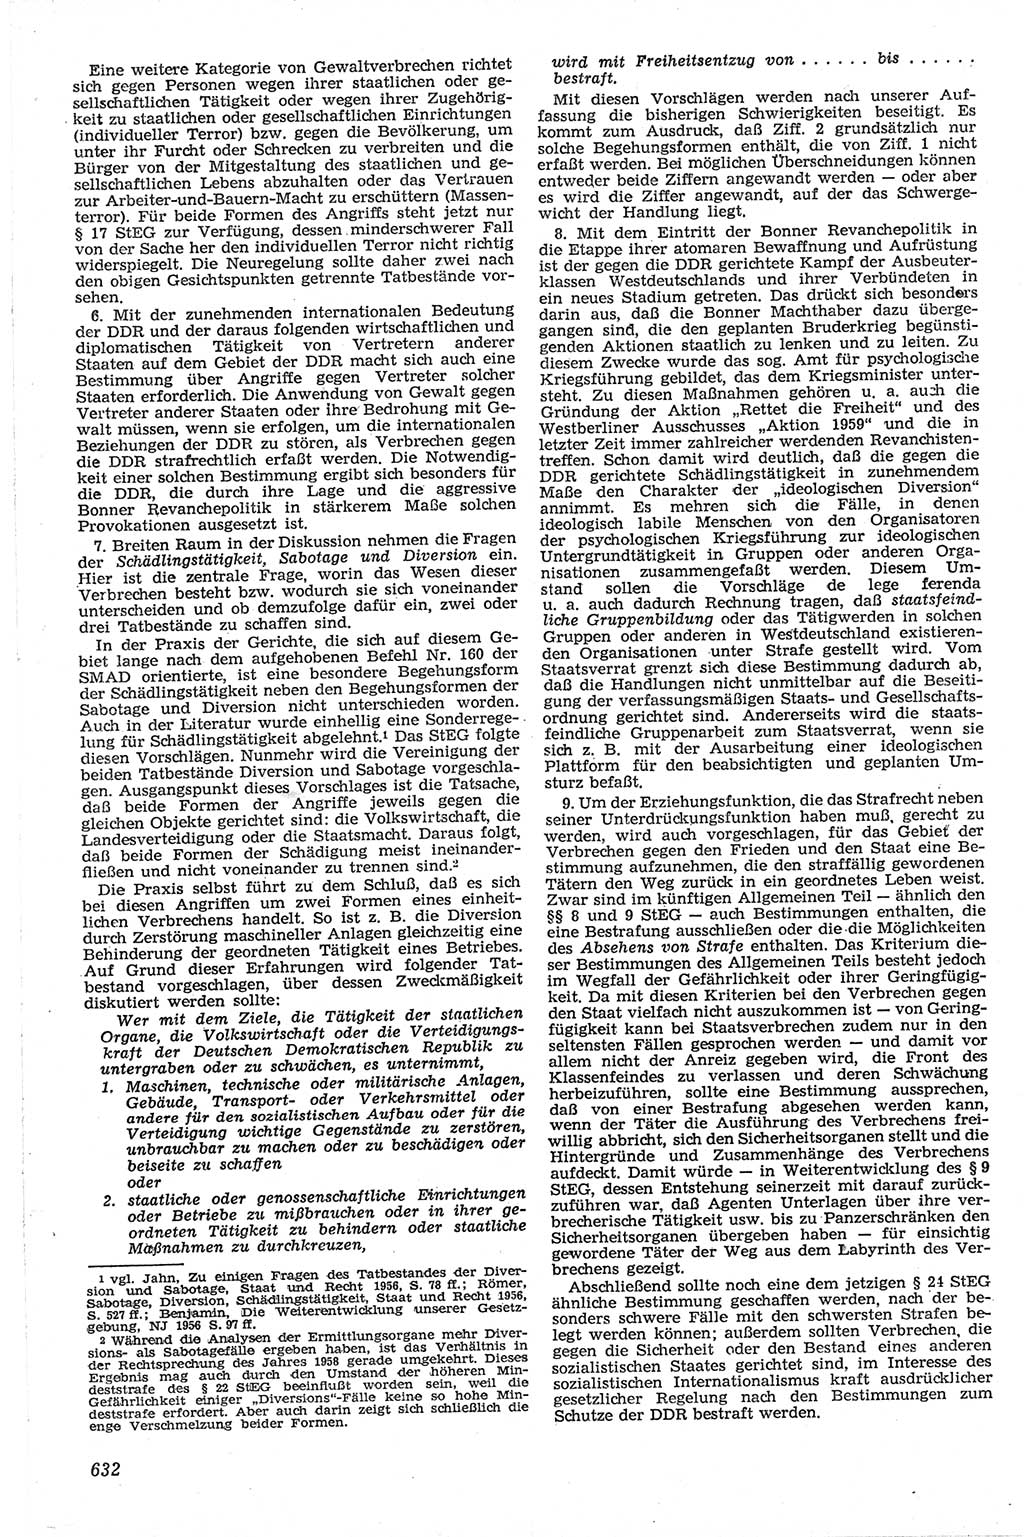 Neue Justiz (NJ), Zeitschrift für Recht und Rechtswissenschaft [Deutsche Demokratische Republik (DDR)], 13. Jahrgang 1959, Seite 632 (NJ DDR 1959, S. 632)